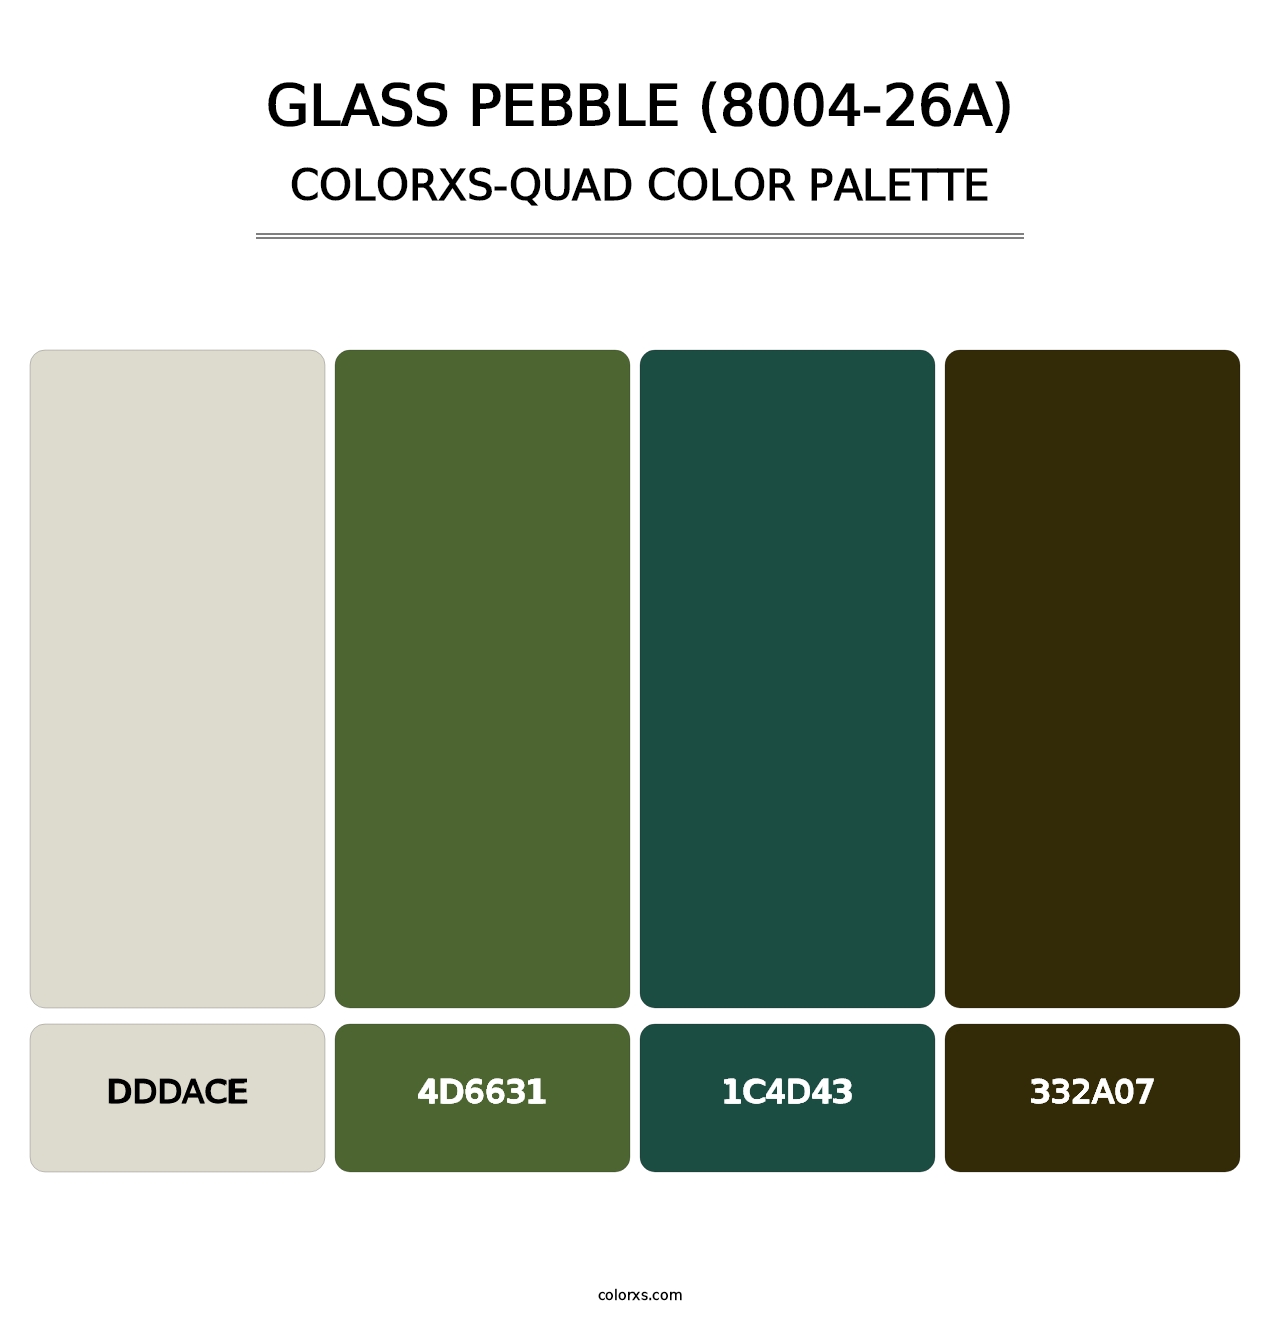 Glass Pebble (8004-26A) - Colorxs Quad Palette